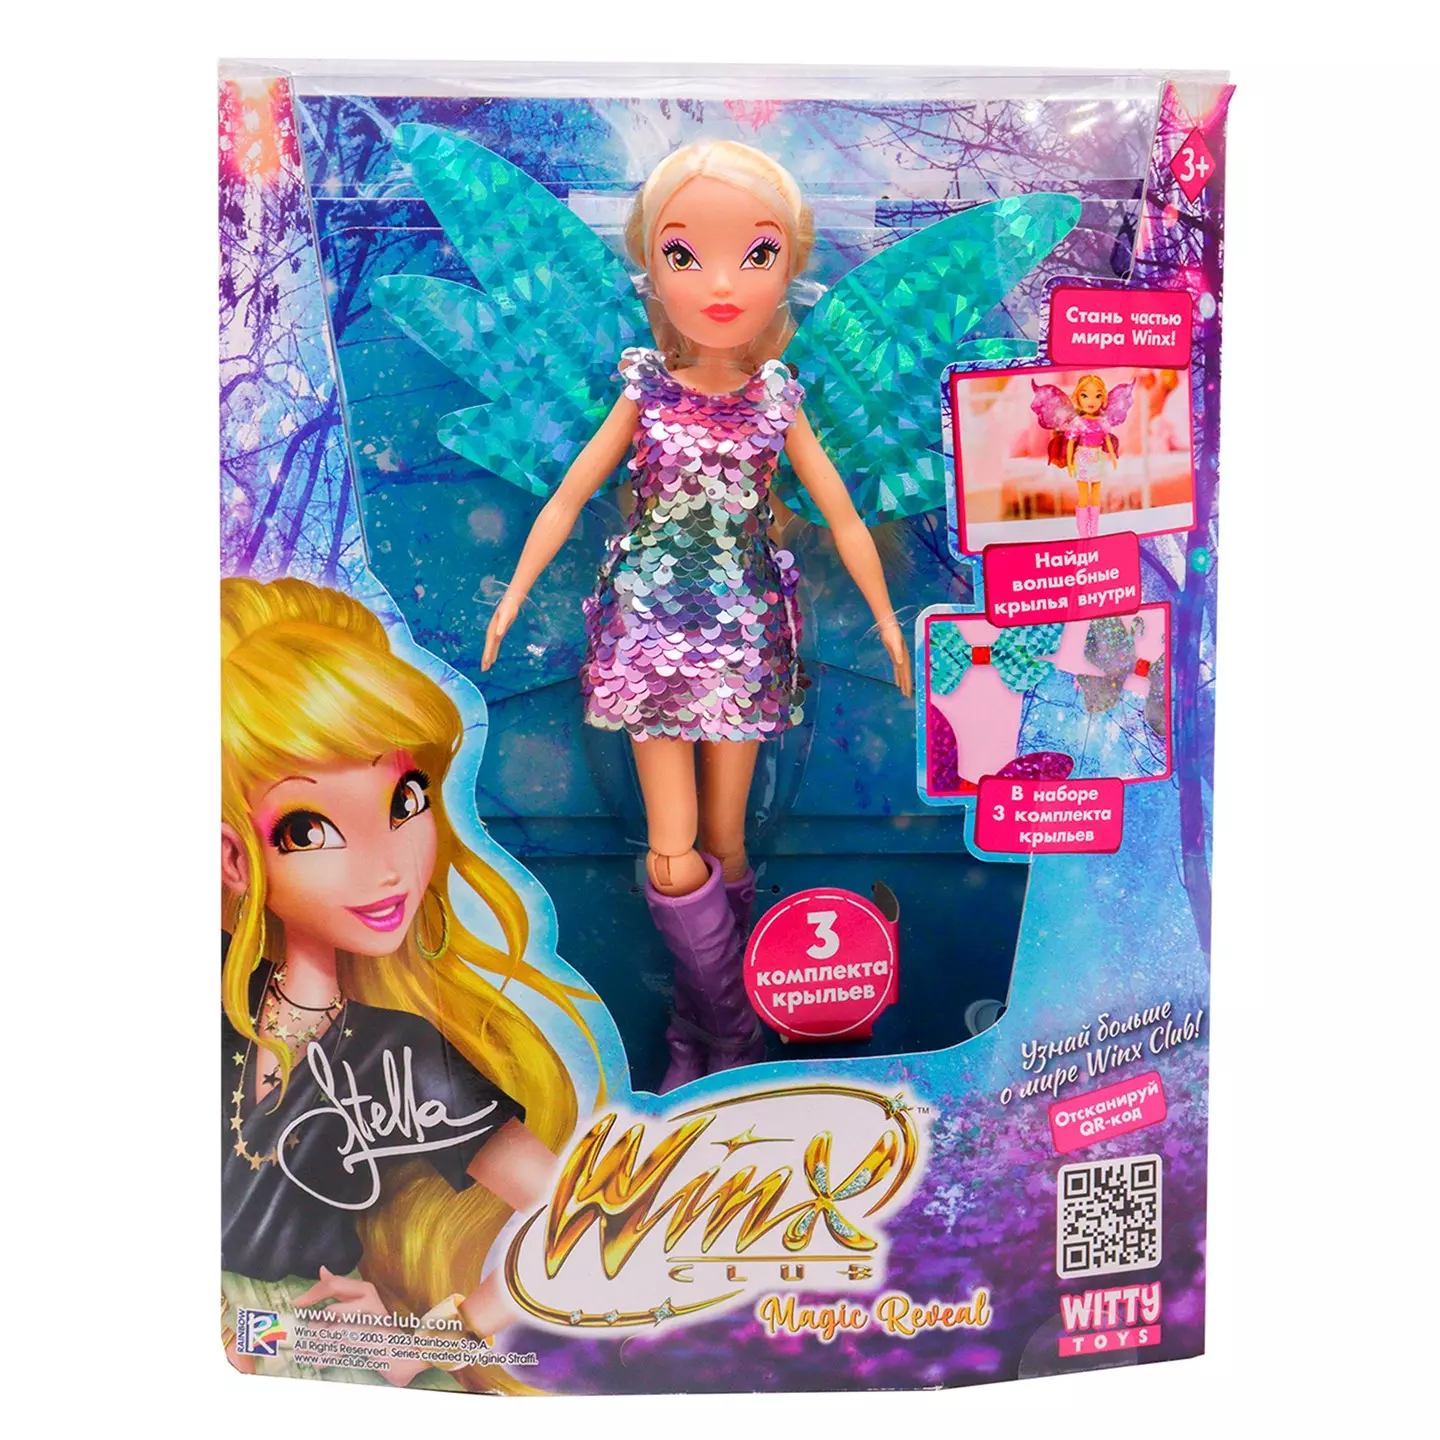 Кукла шарнирная Winx Club Magic reveal Стелла с крыльями 3 шт 24 см IW01302203